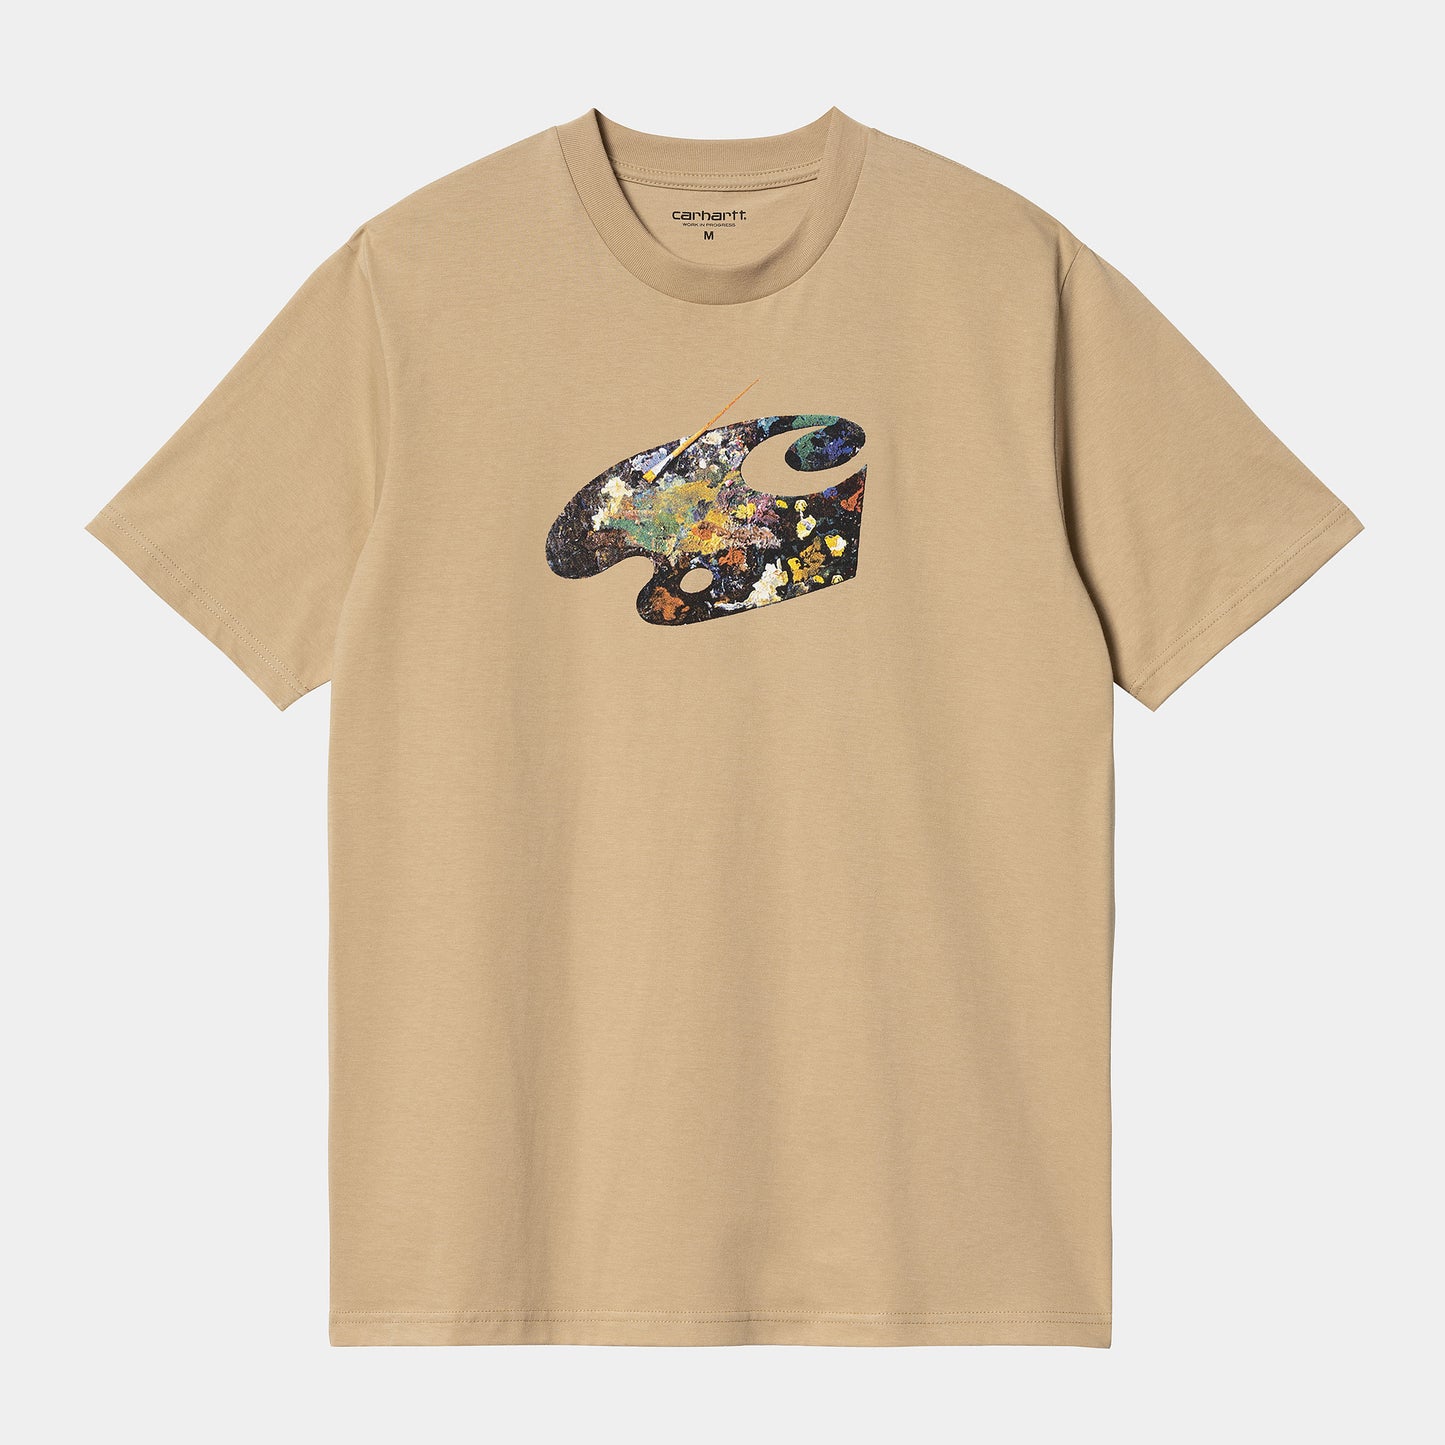 Carhartt S/S Palette T Shirt